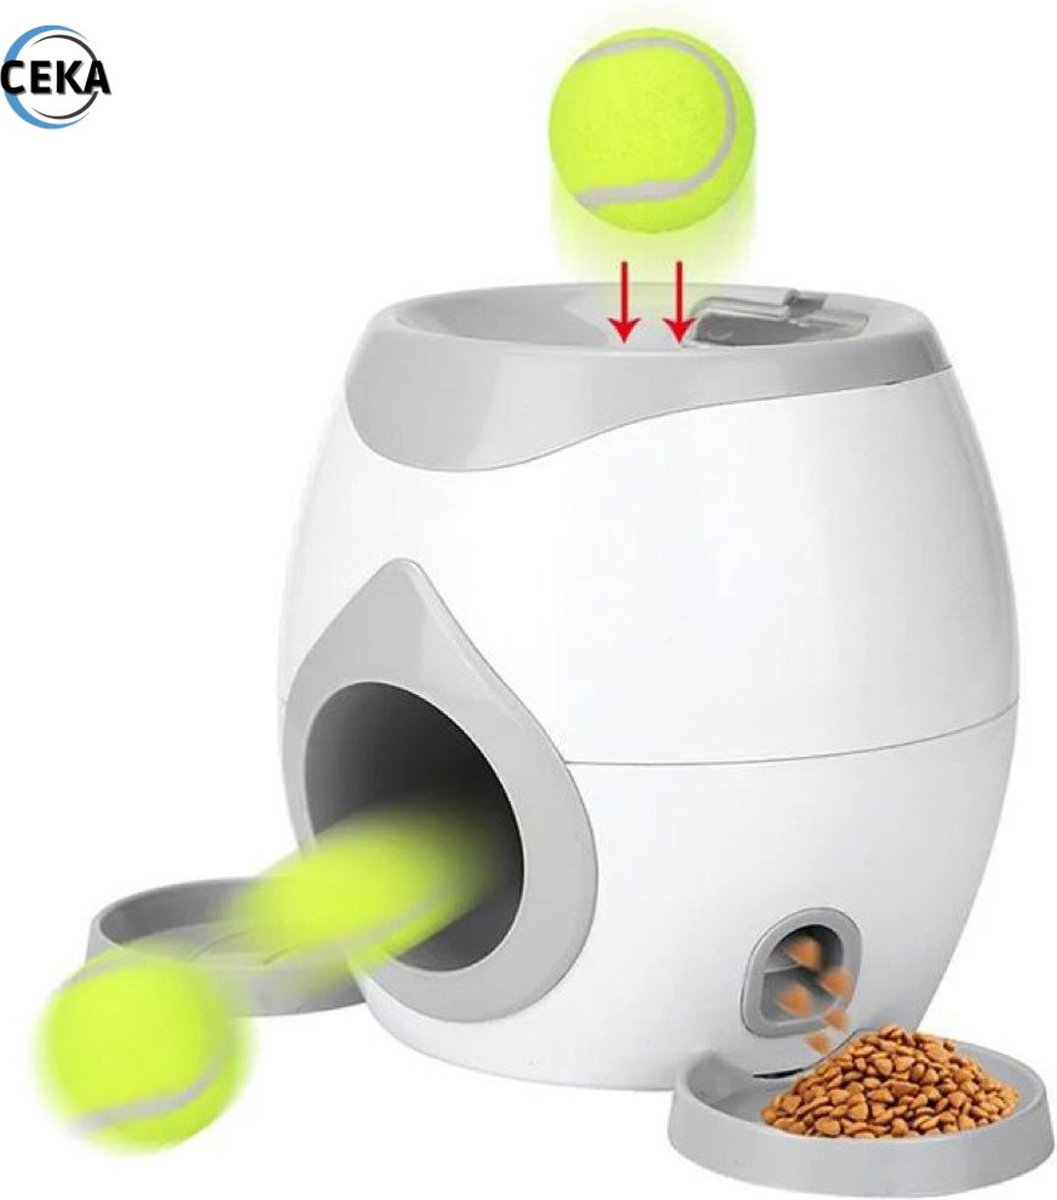 Ceka - hondspeelgoed - met voer / beloning systeem - honden speelgoed intelligentie - inclusief 2 tennisbalen + voerschep